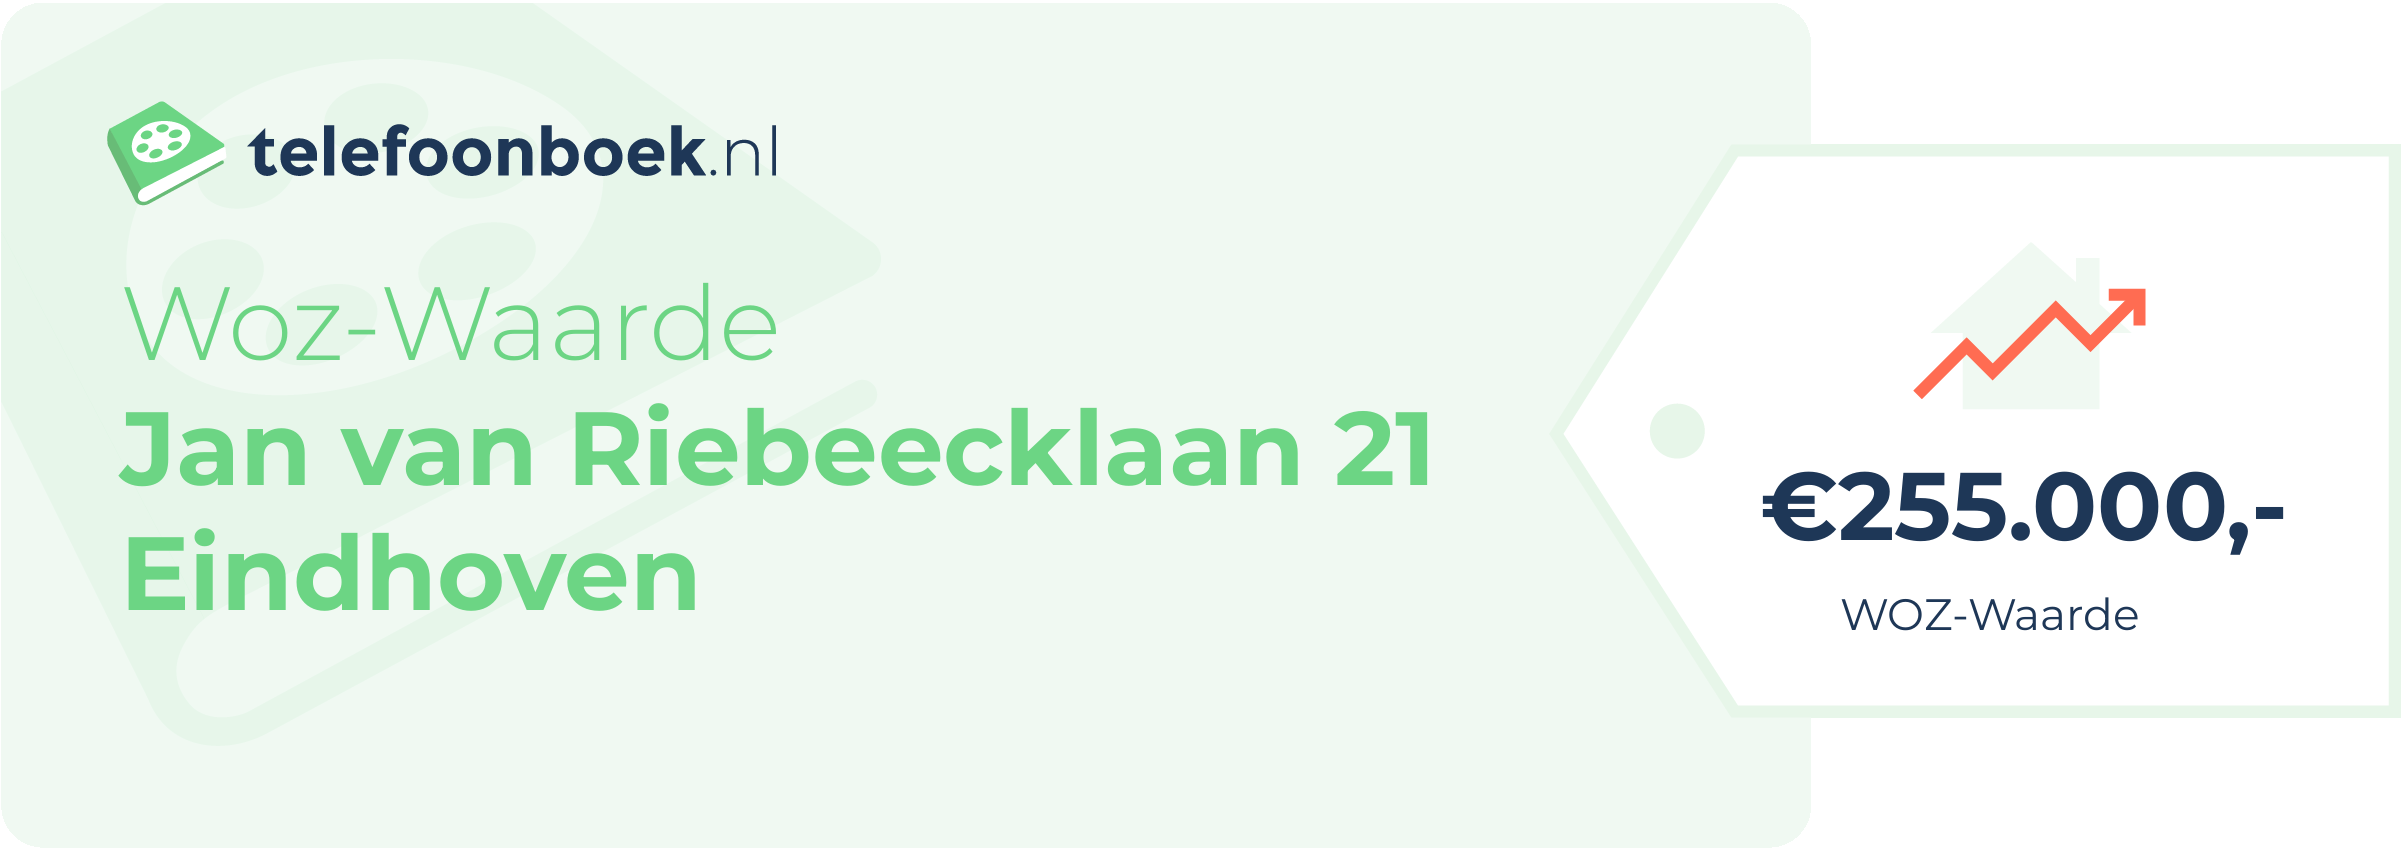 WOZ-waarde Jan Van Riebeecklaan 21 Eindhoven